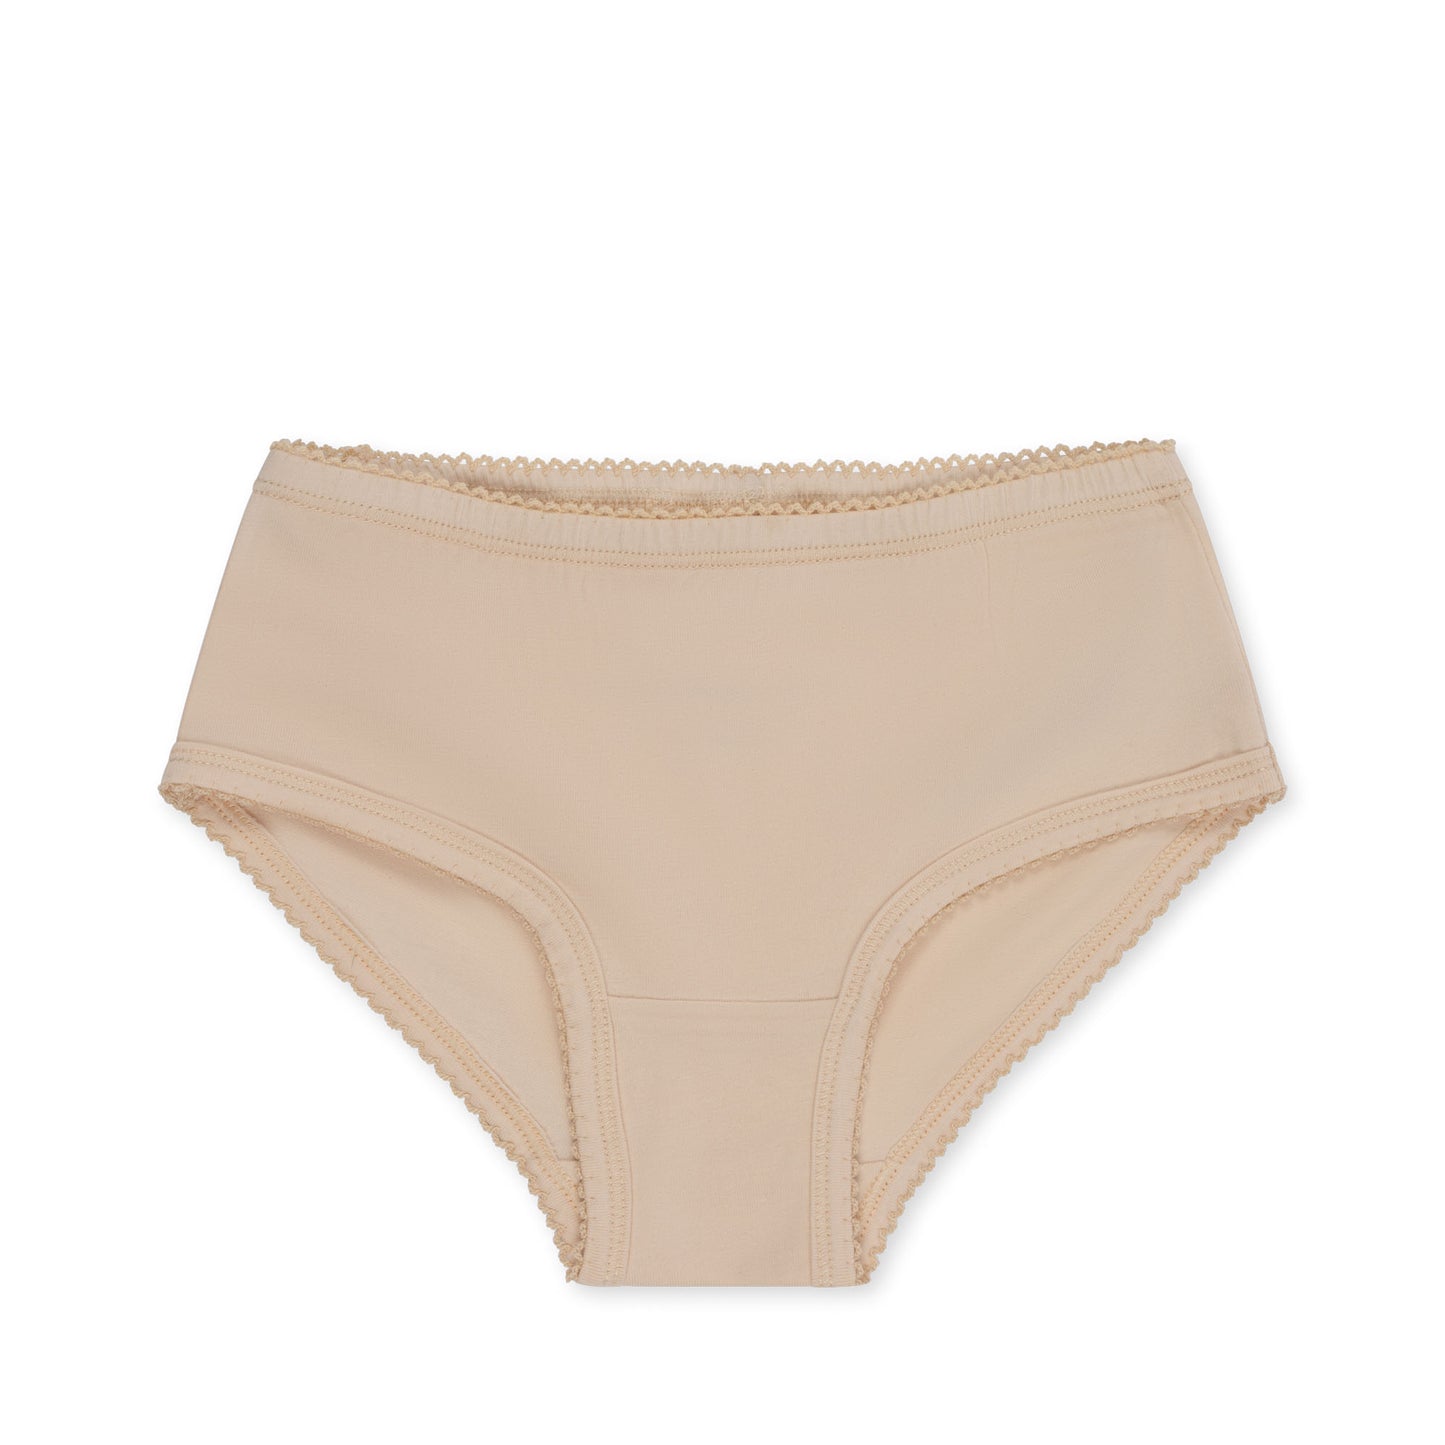 Basic 2 Pack Girl Underpants Set, Brise De Ete